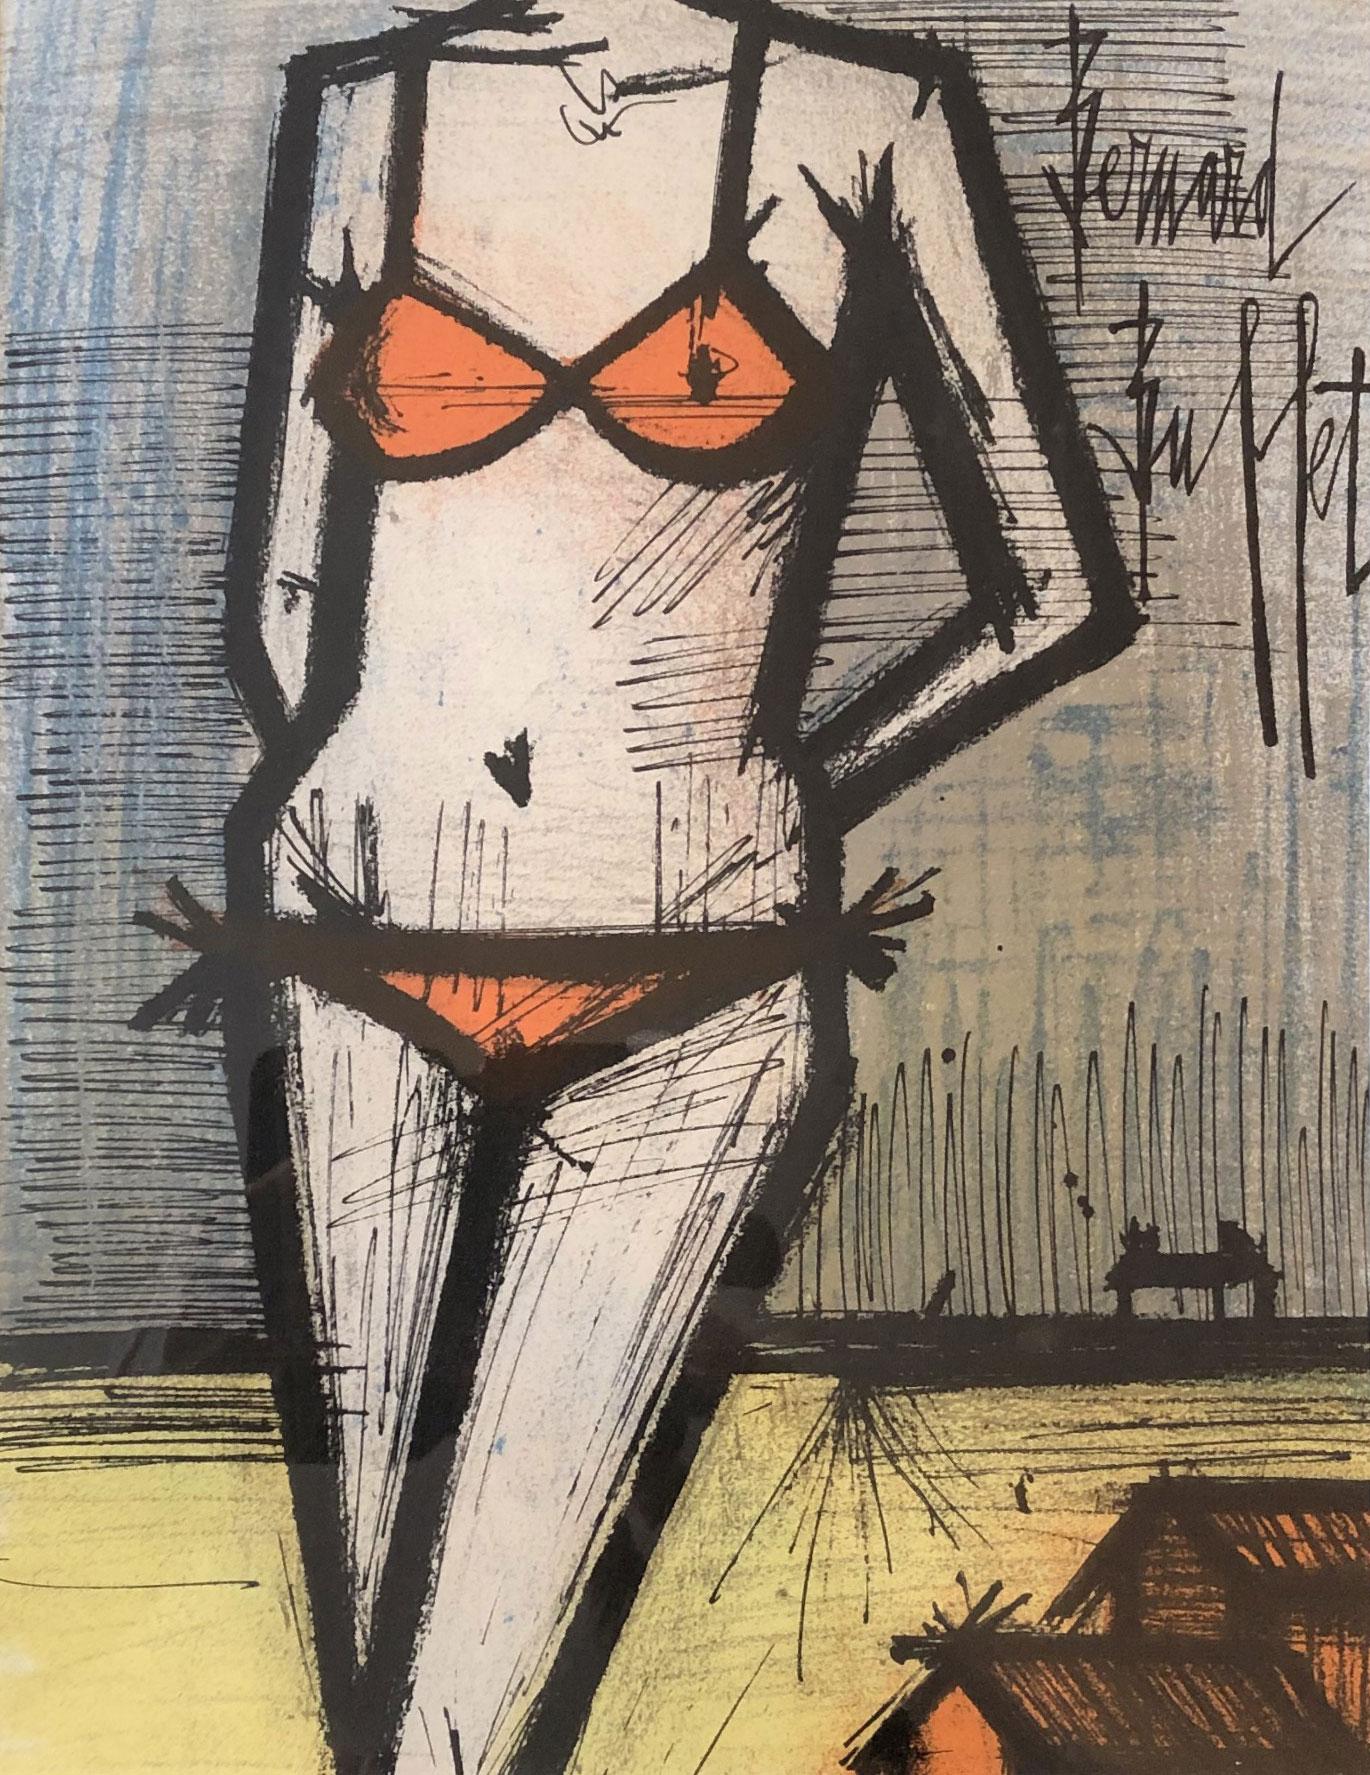 On the Beach - Print by Bernard Buffet